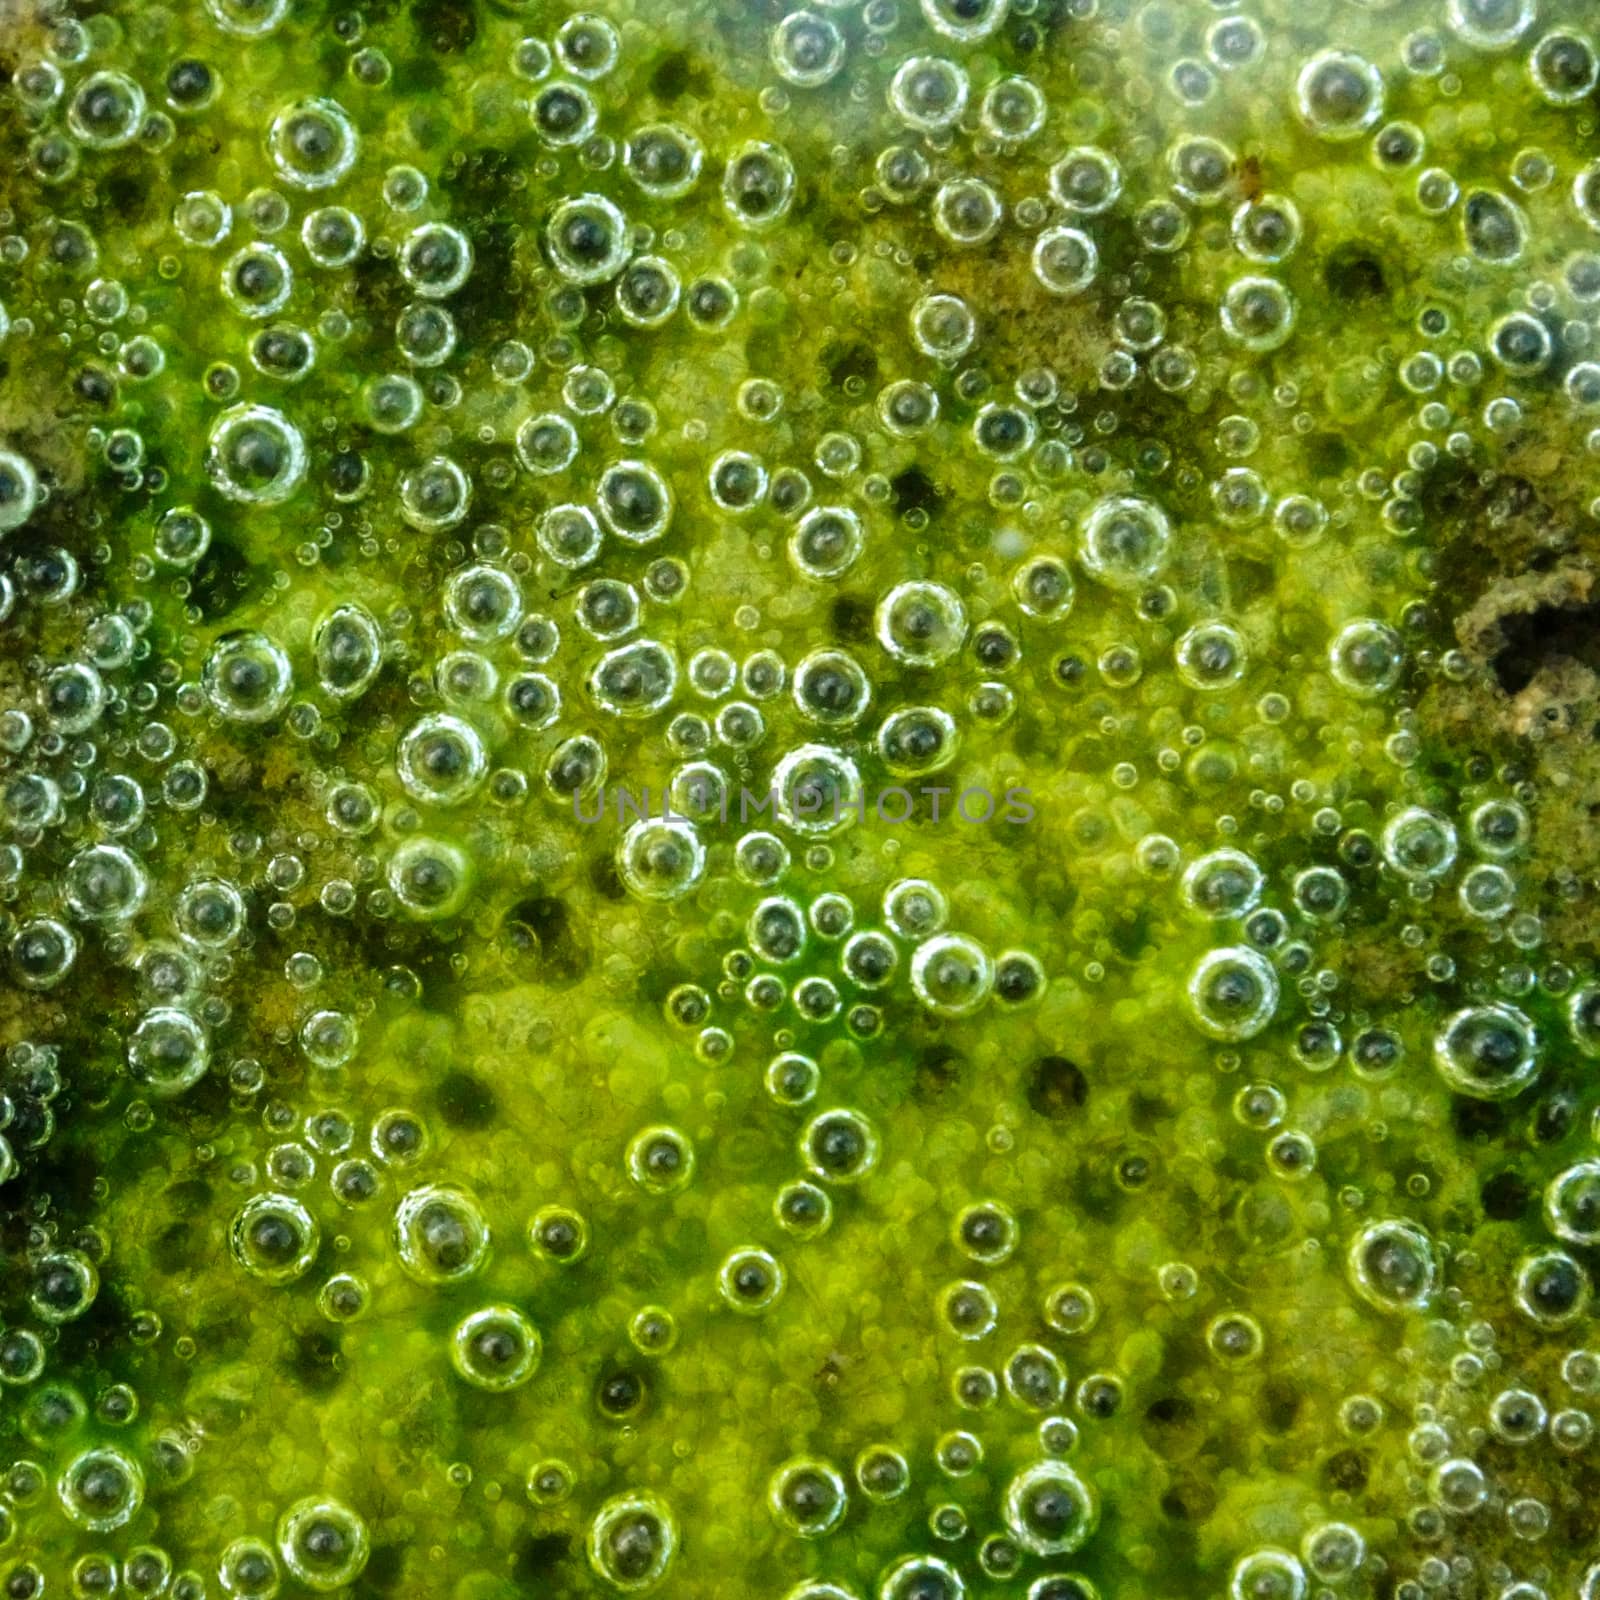 Green slime from algae.